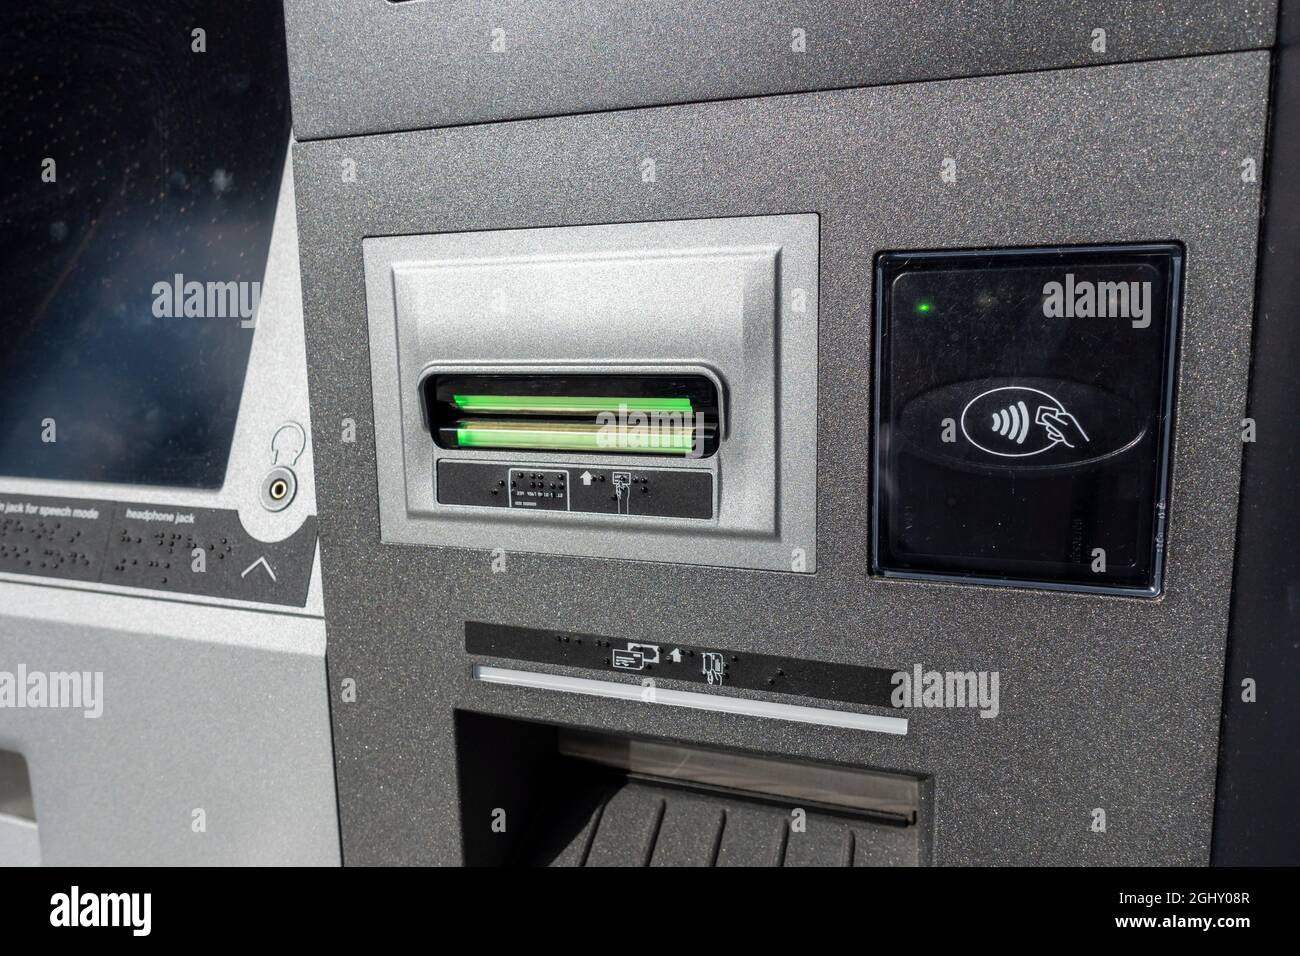 Nahaufnahme eines Einsteckplatzes für eine ATM-Karte und Antippen, um einen Platz außerhalb eines Bankgebäudes zu scannen. Stockfoto